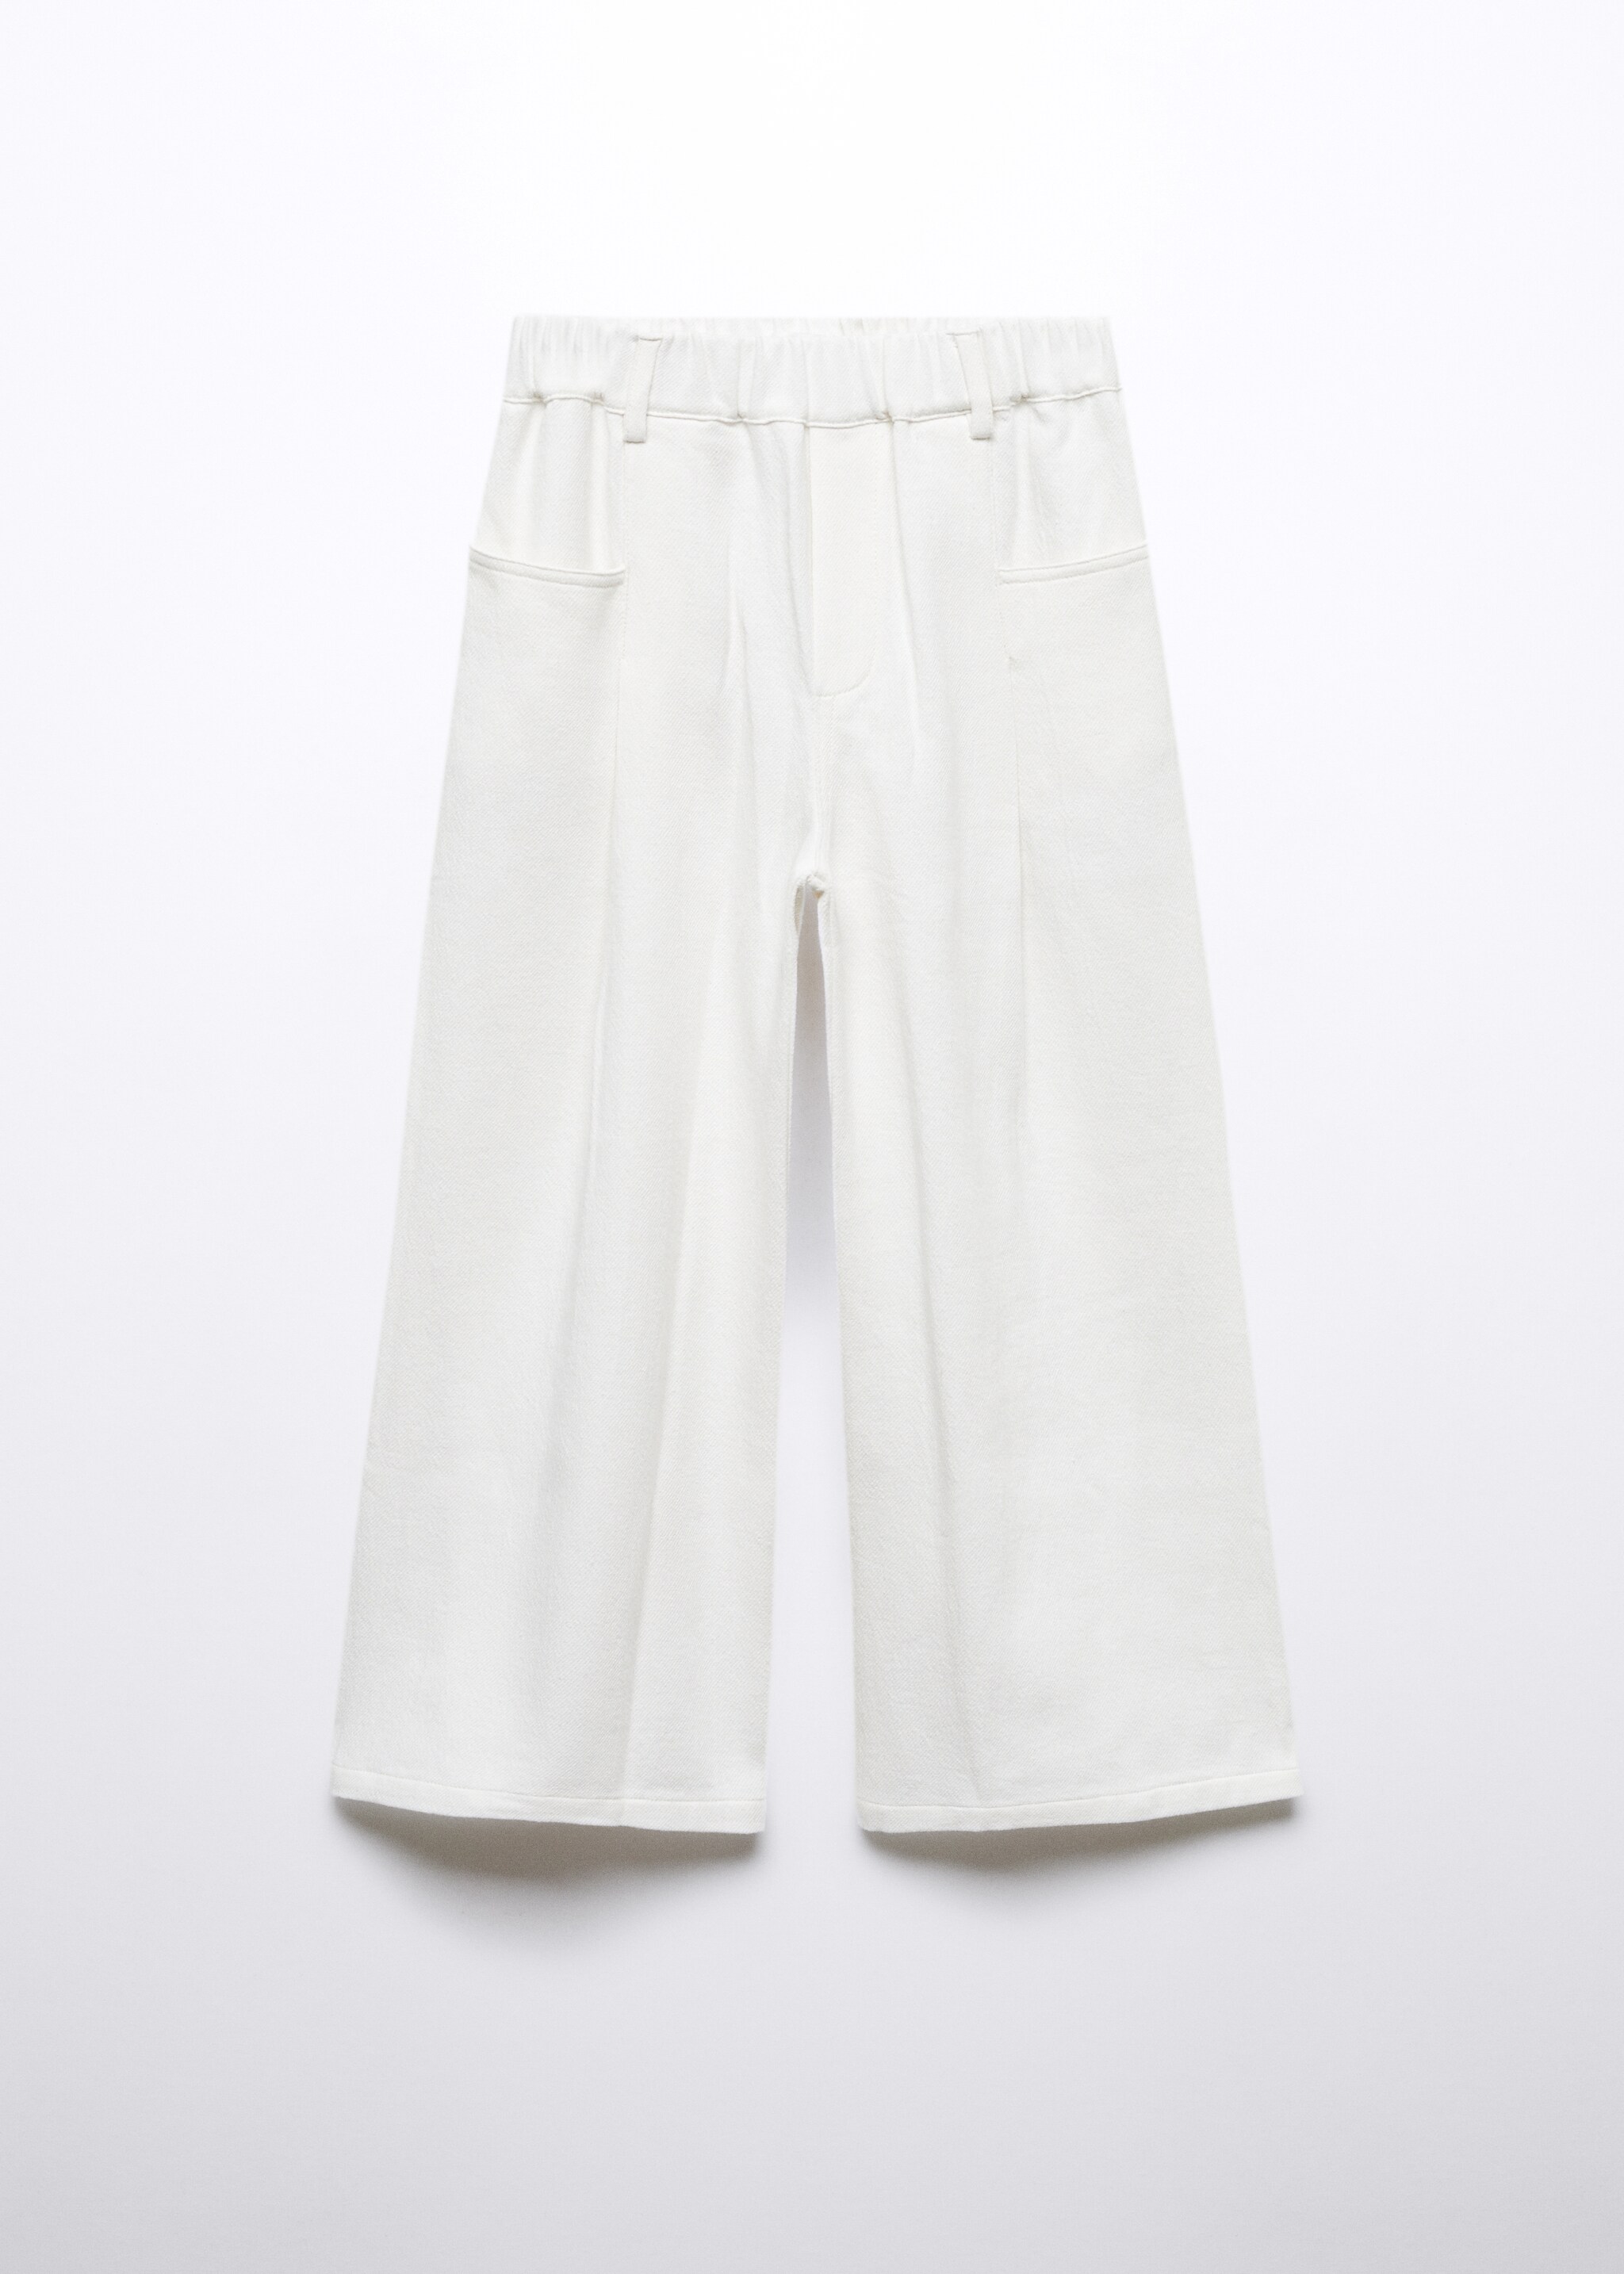 Bavlněné elastické kalhoty - Zboží bez modelu